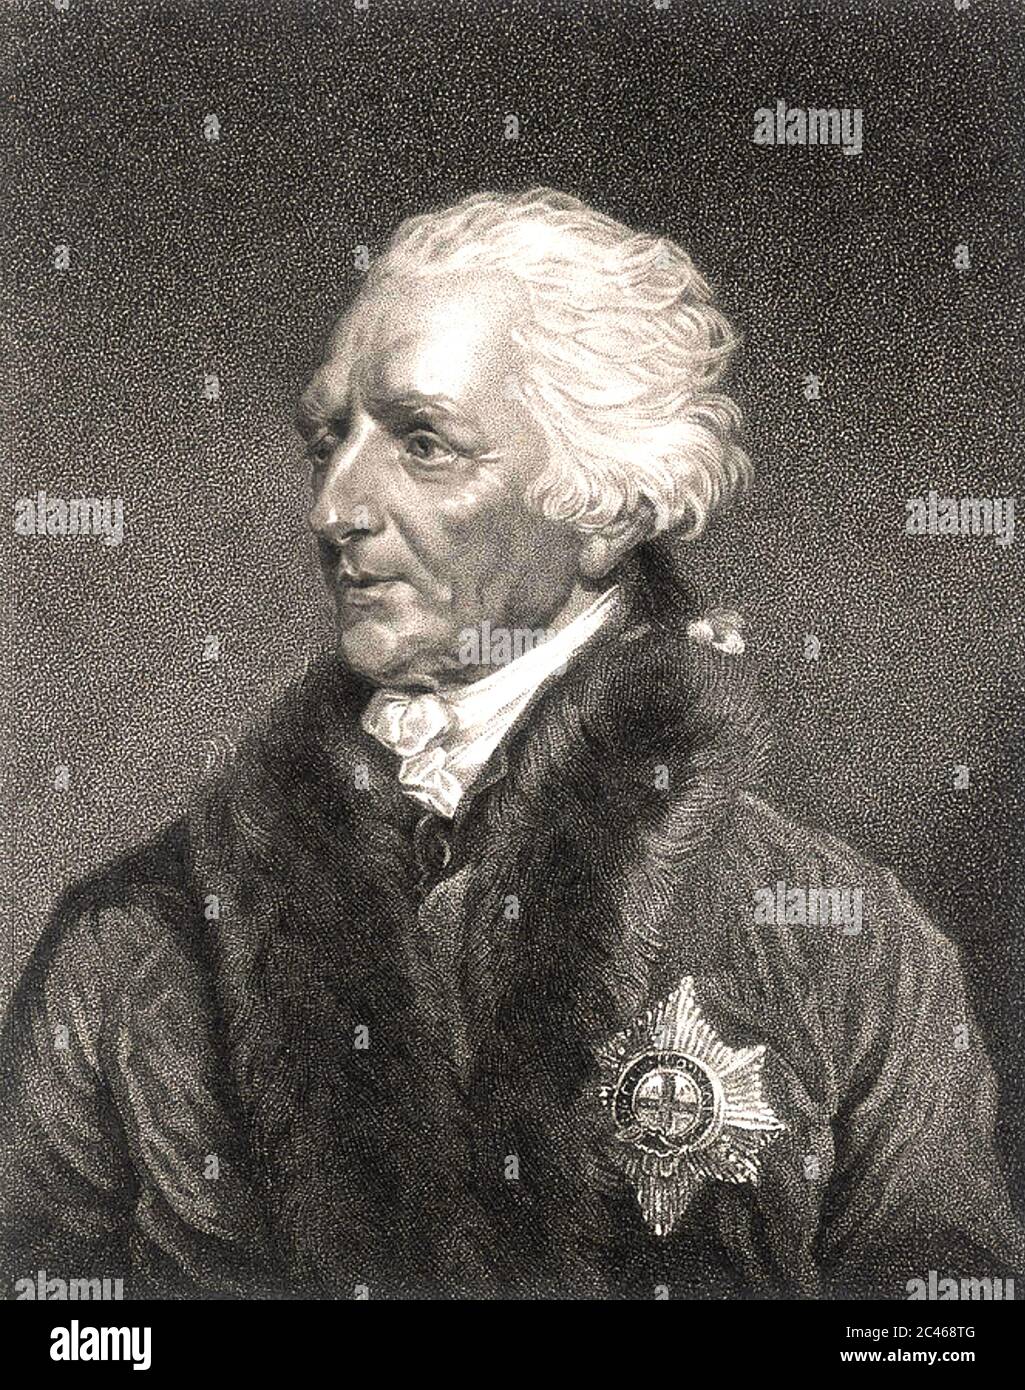 AUGUSTUS FITZROY (1716-1741) officier de la Marine royale britannique Banque D'Images